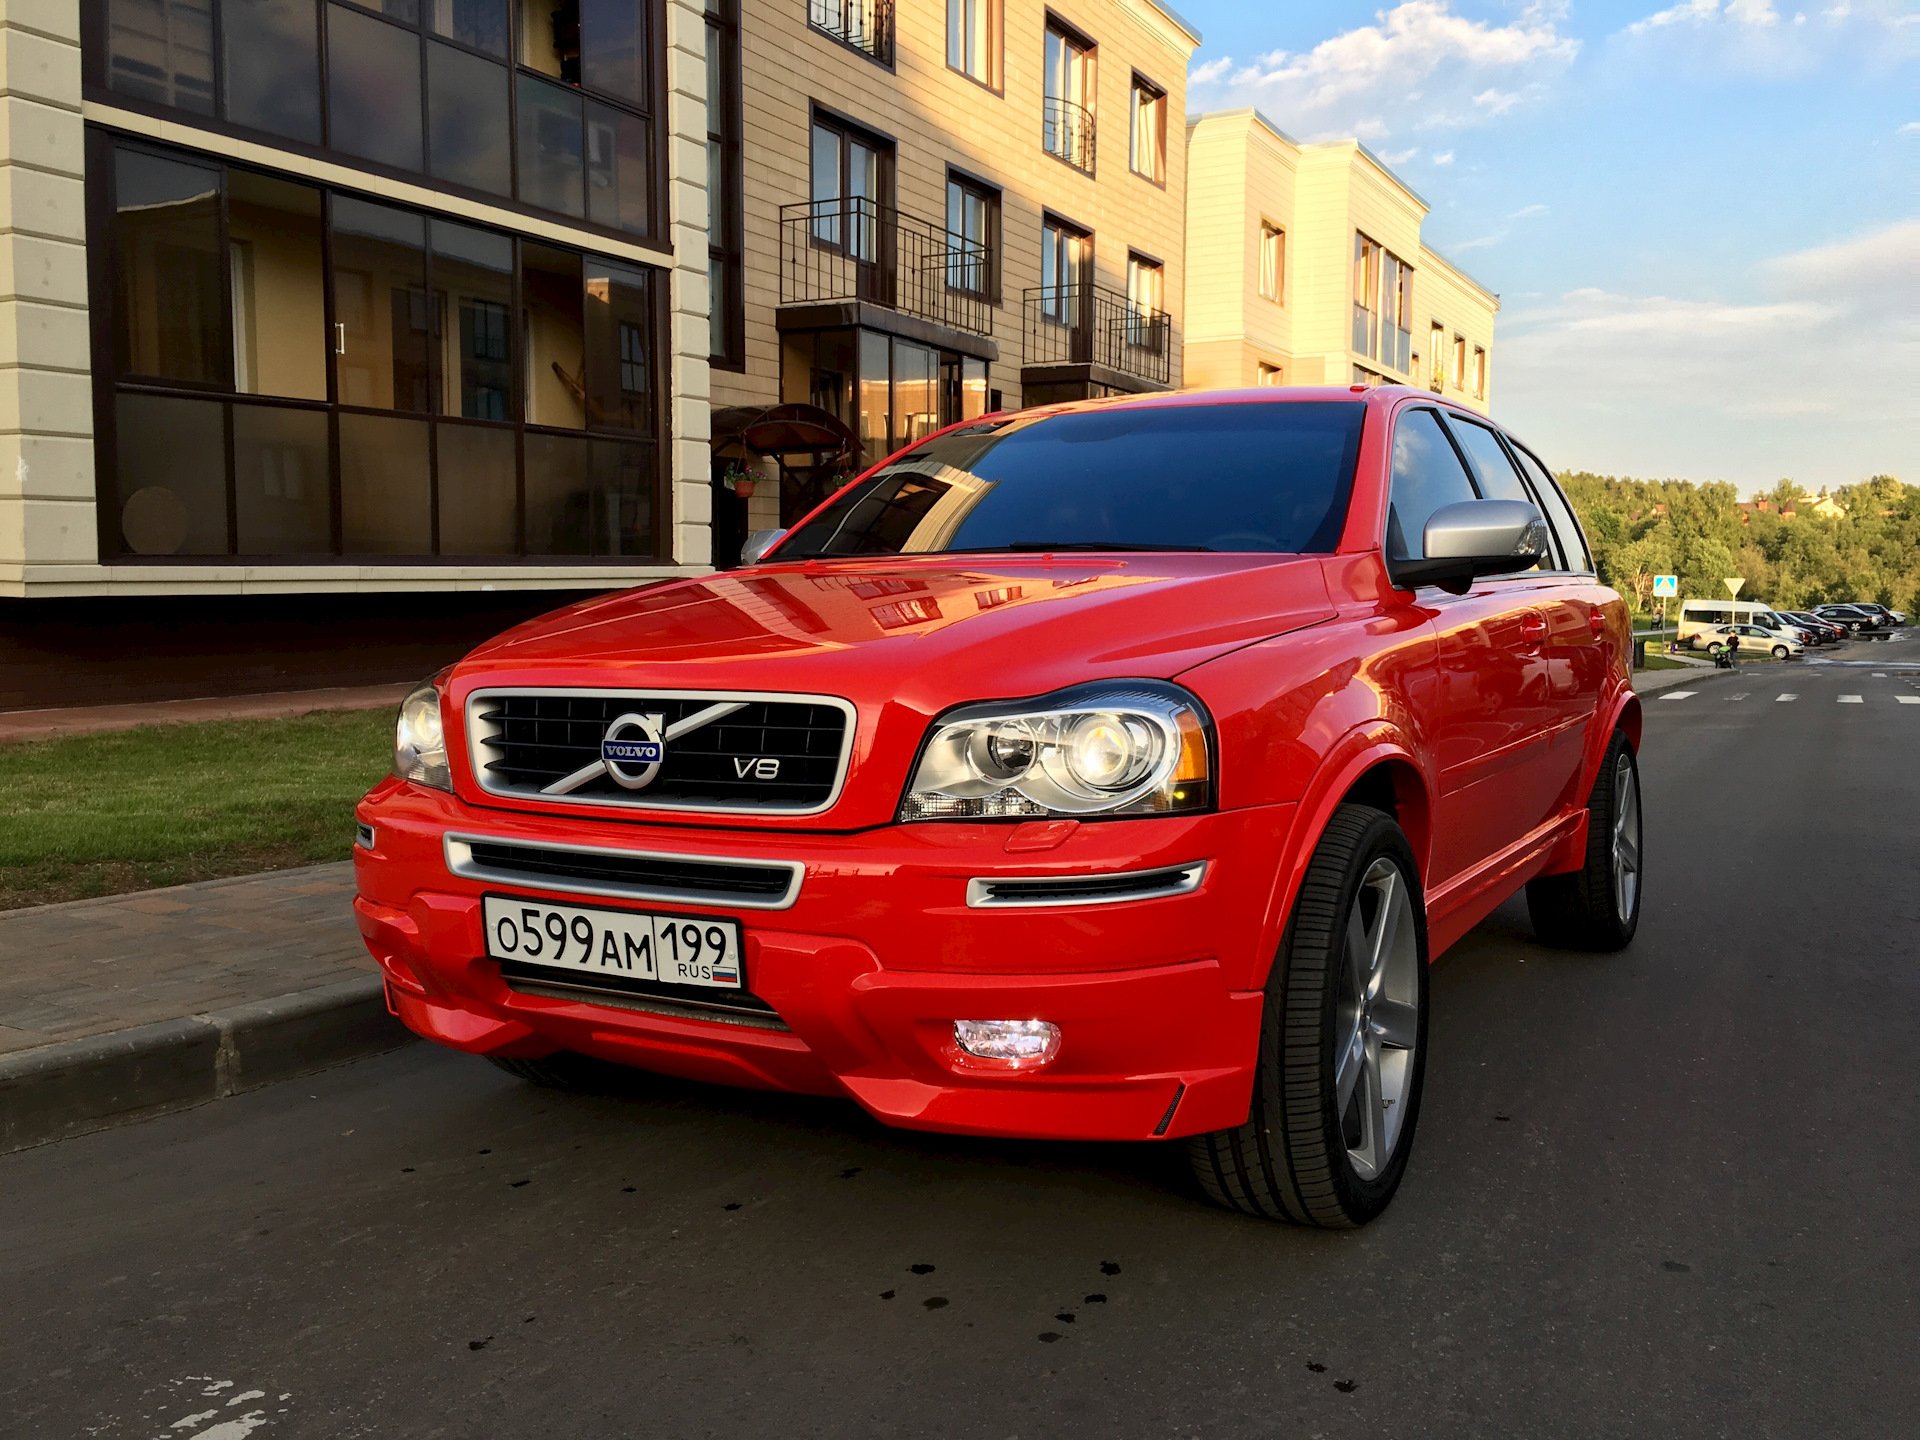 Вольво хс90 первого поколения. Volvo xc90 Red. Volvo xc90 v8 2008. Вольво хс90 красная. Красный Volvo xc90 v8.